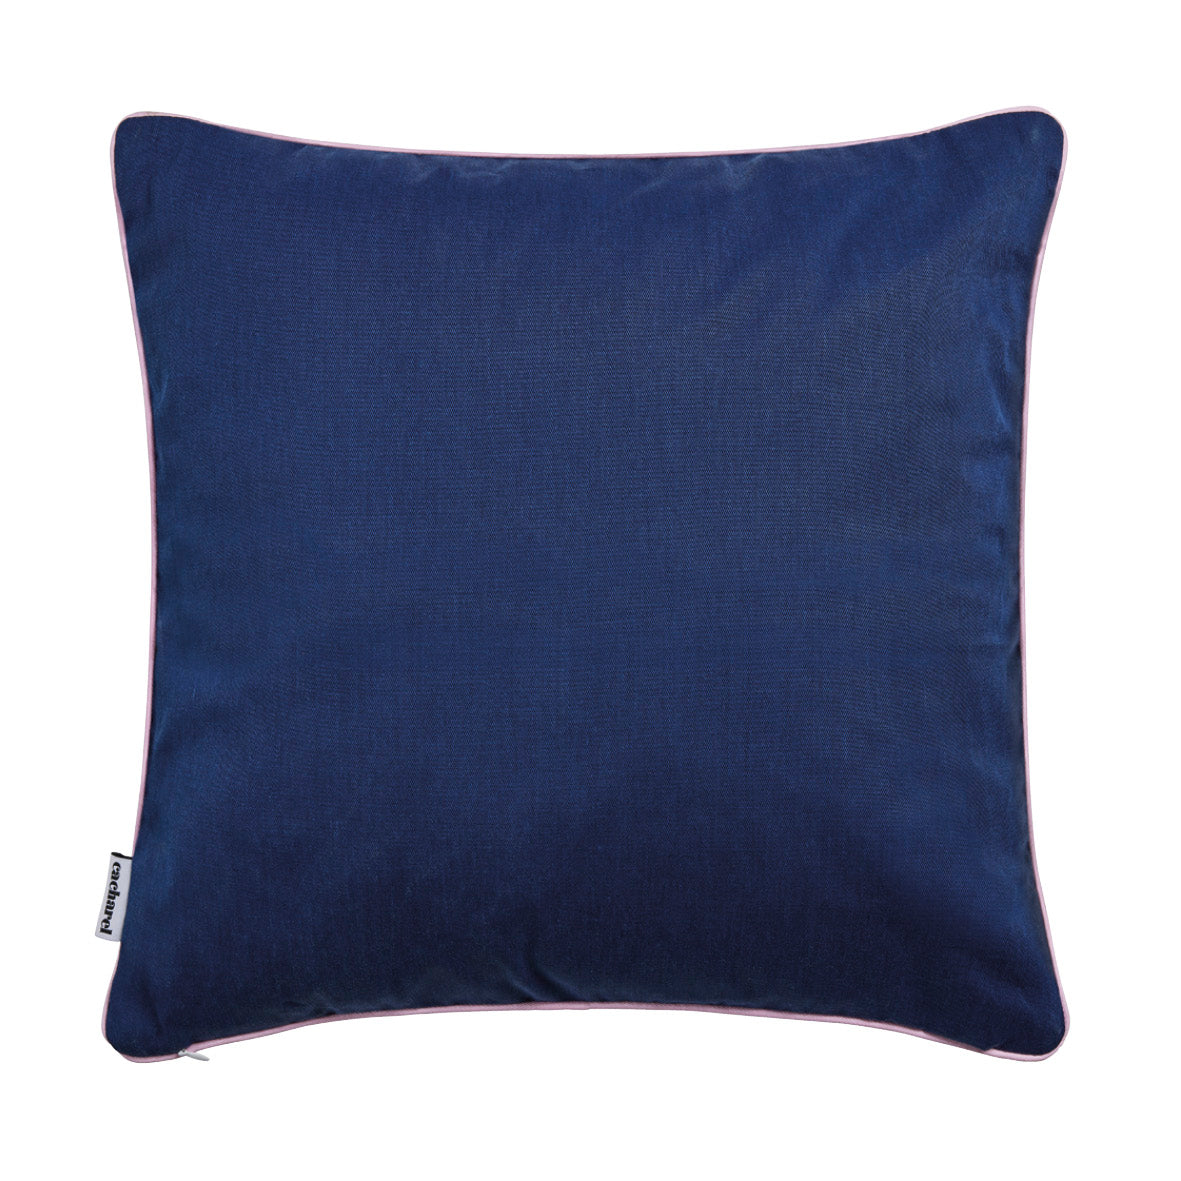 Cushion cover - 45 x 45 cm : Buddleia teal